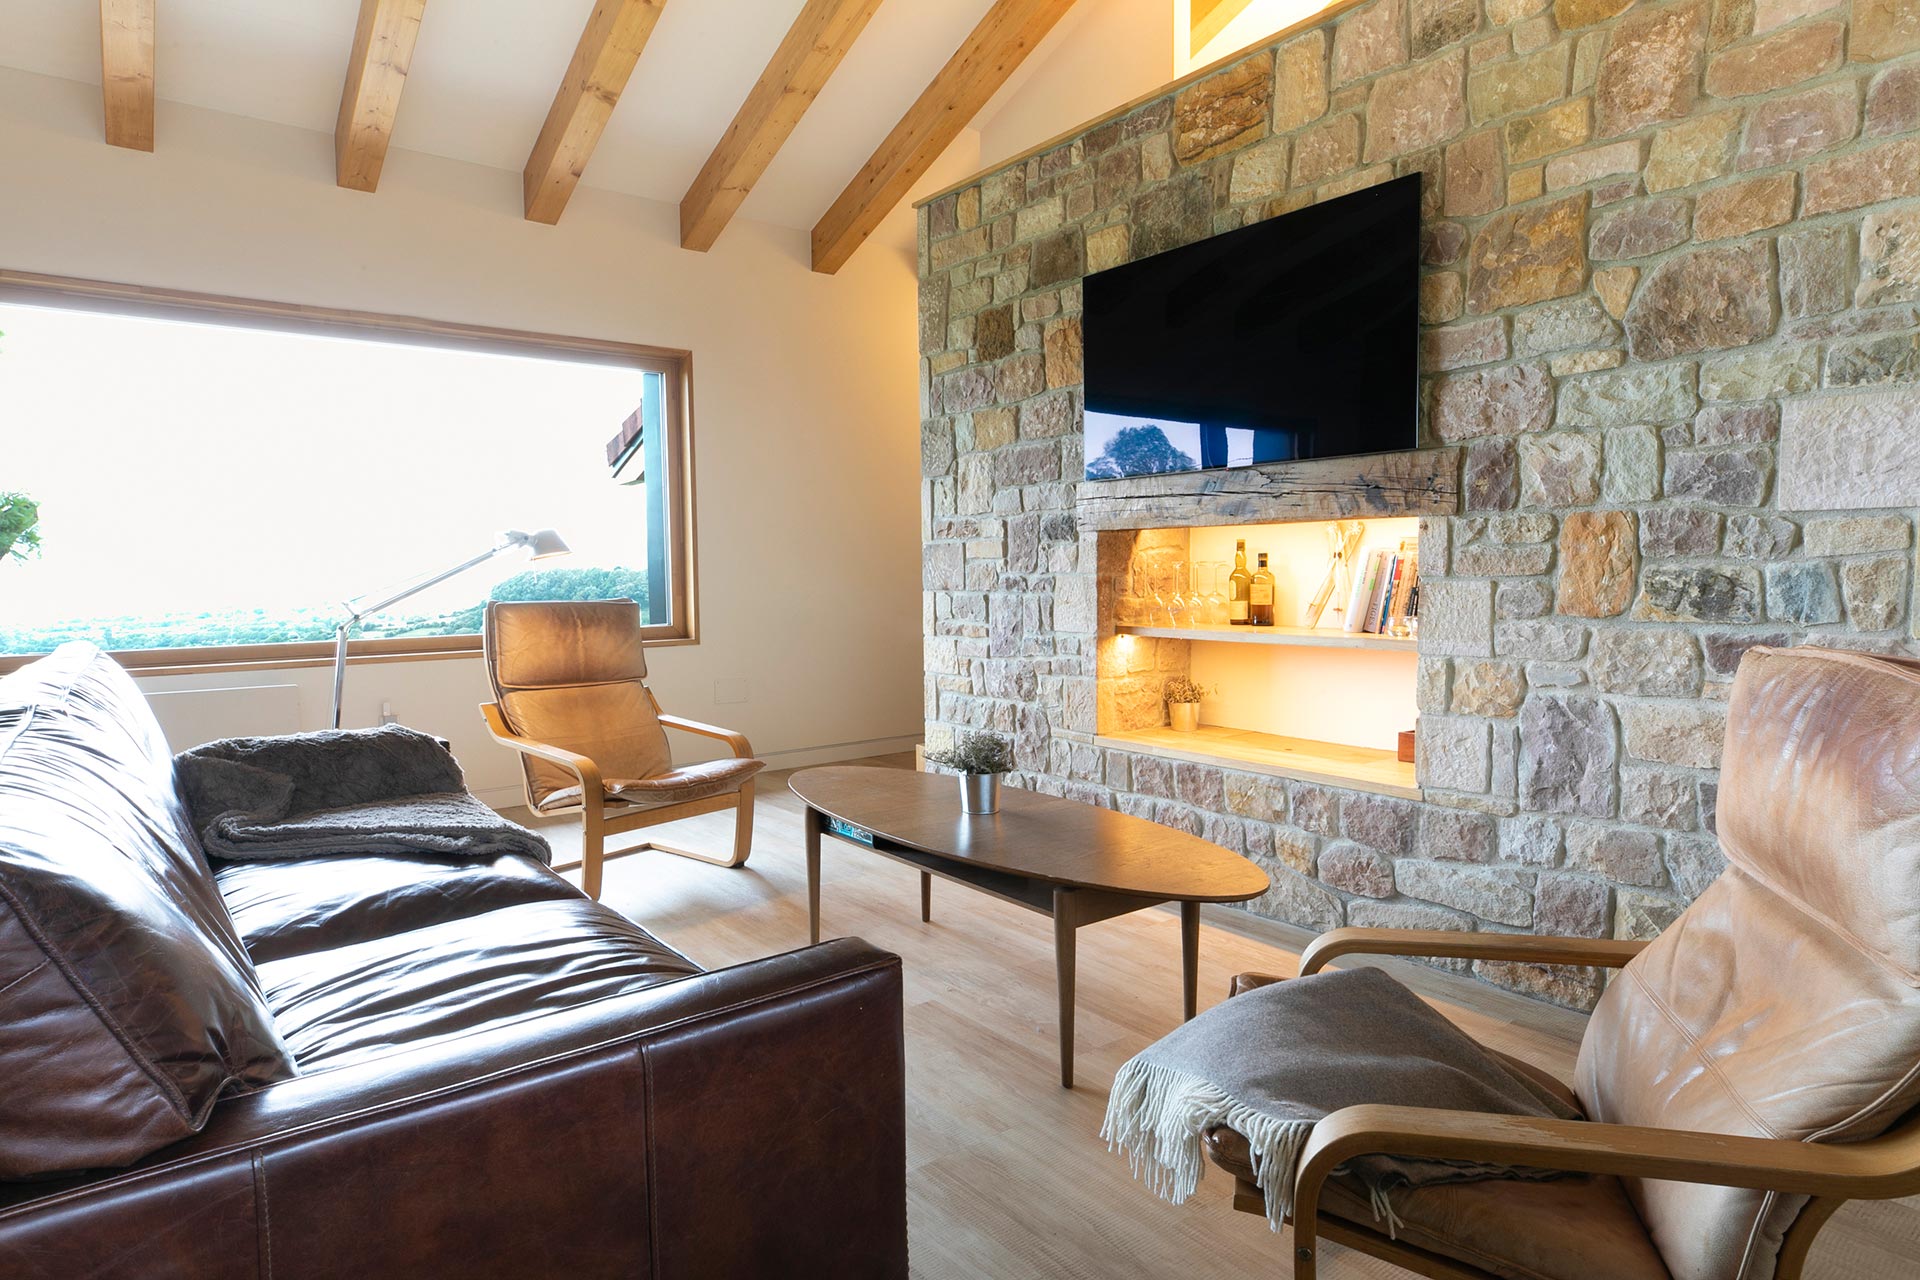 Salón con piedra y madera en alojamiento rural moderno en Proaño diseñada por Moah Arquitectos en Cantabria